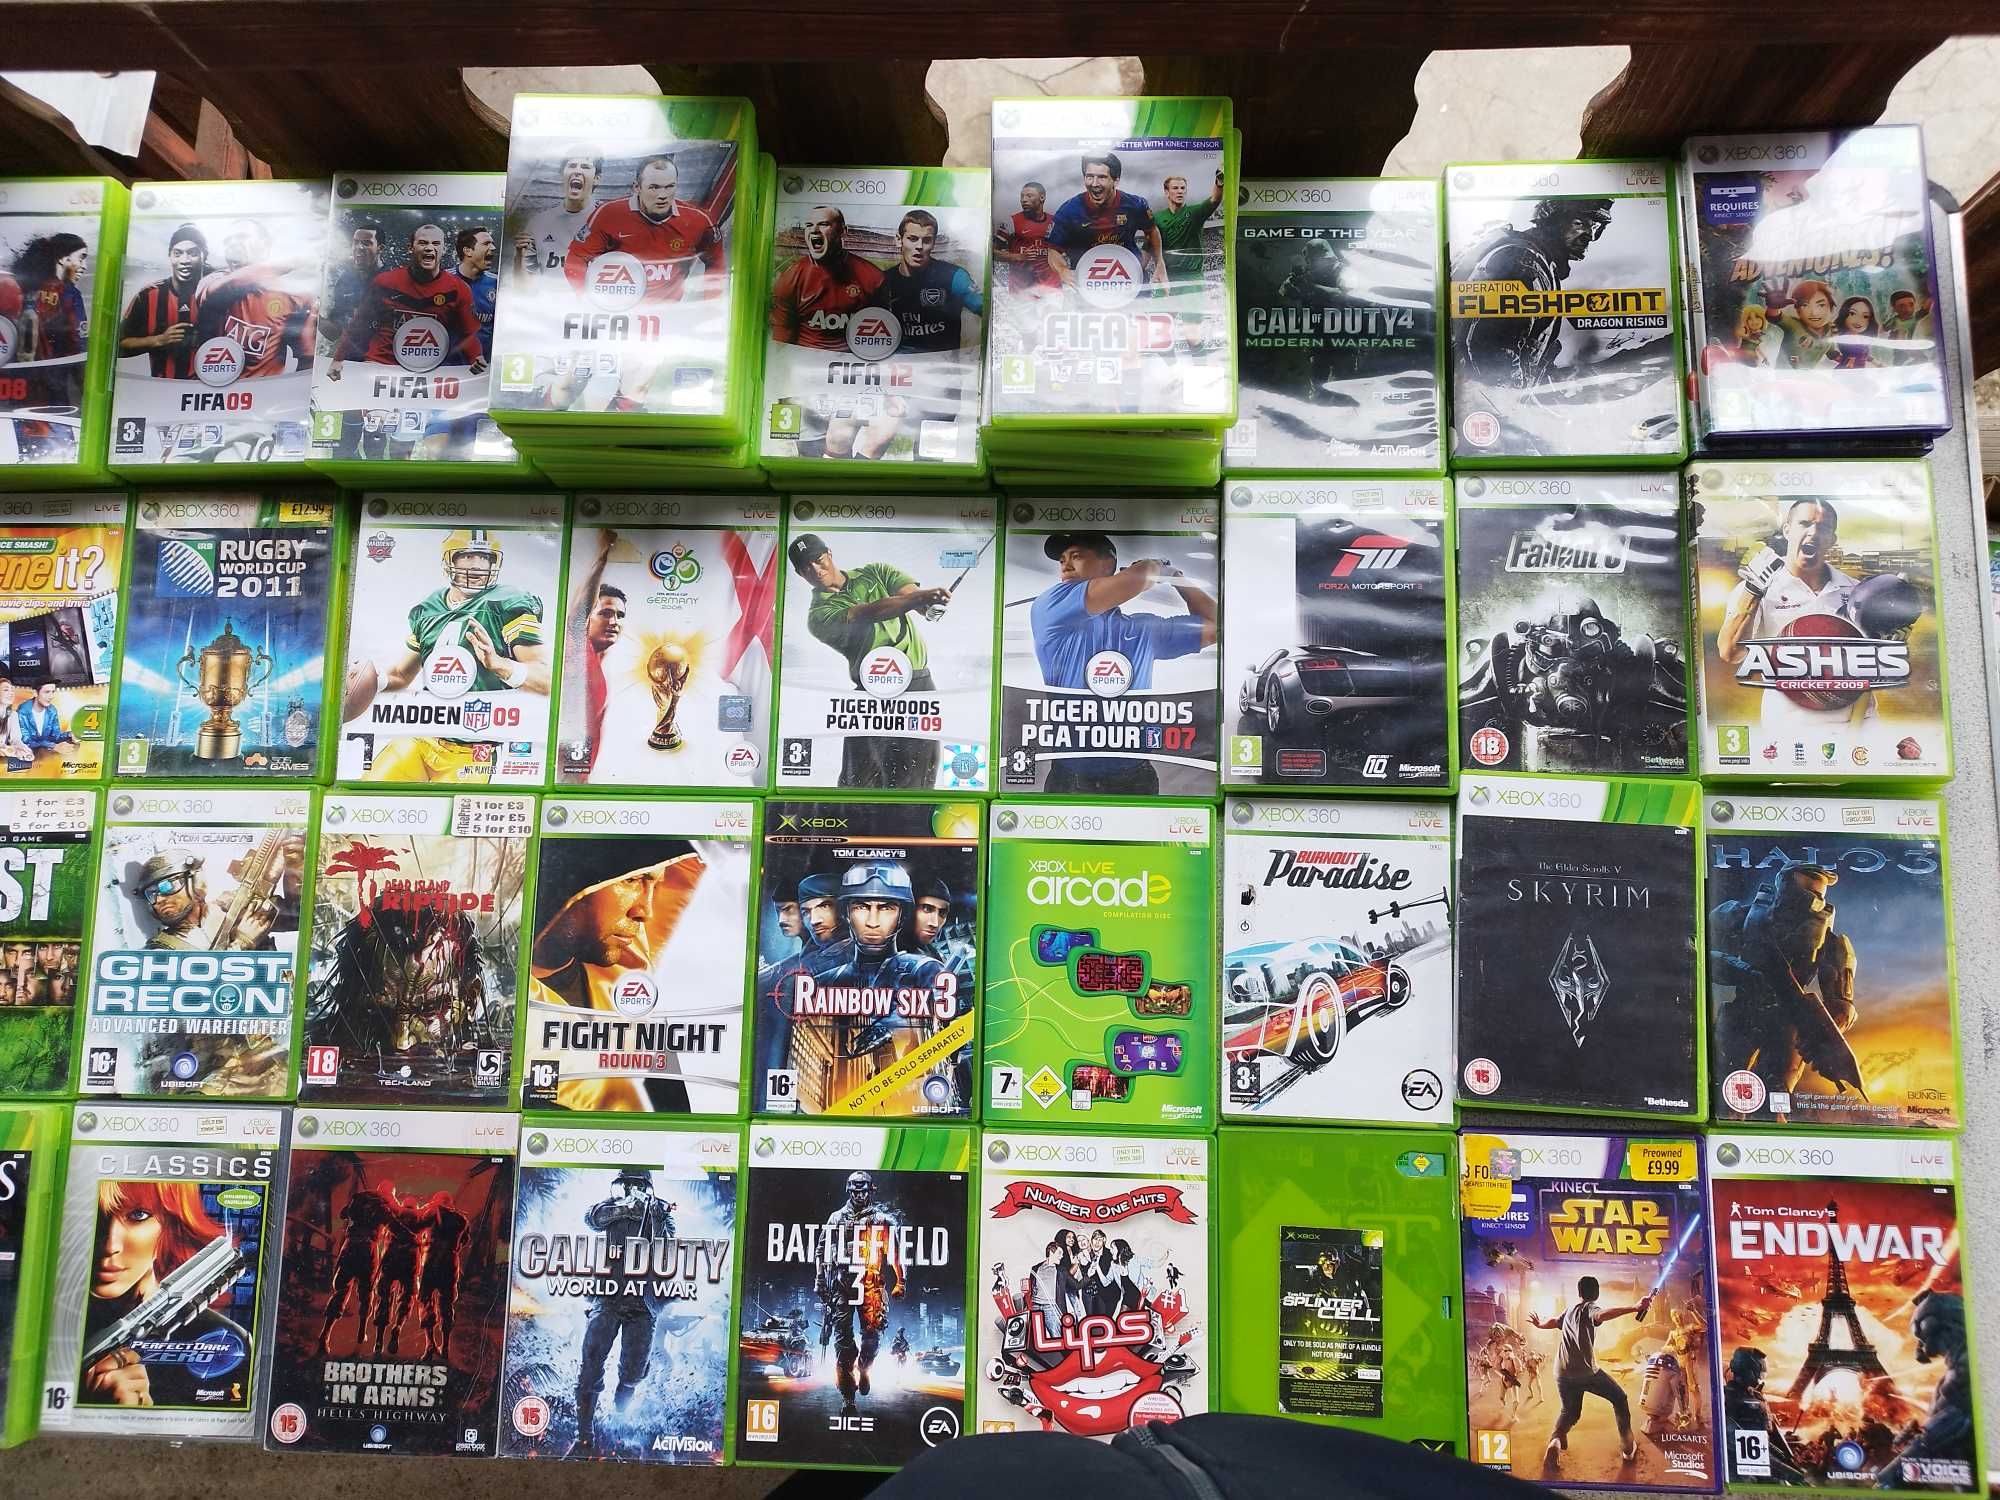 Xbox 360 GAMES / Cпортни - Игри по избор -10лв за 1бр. !